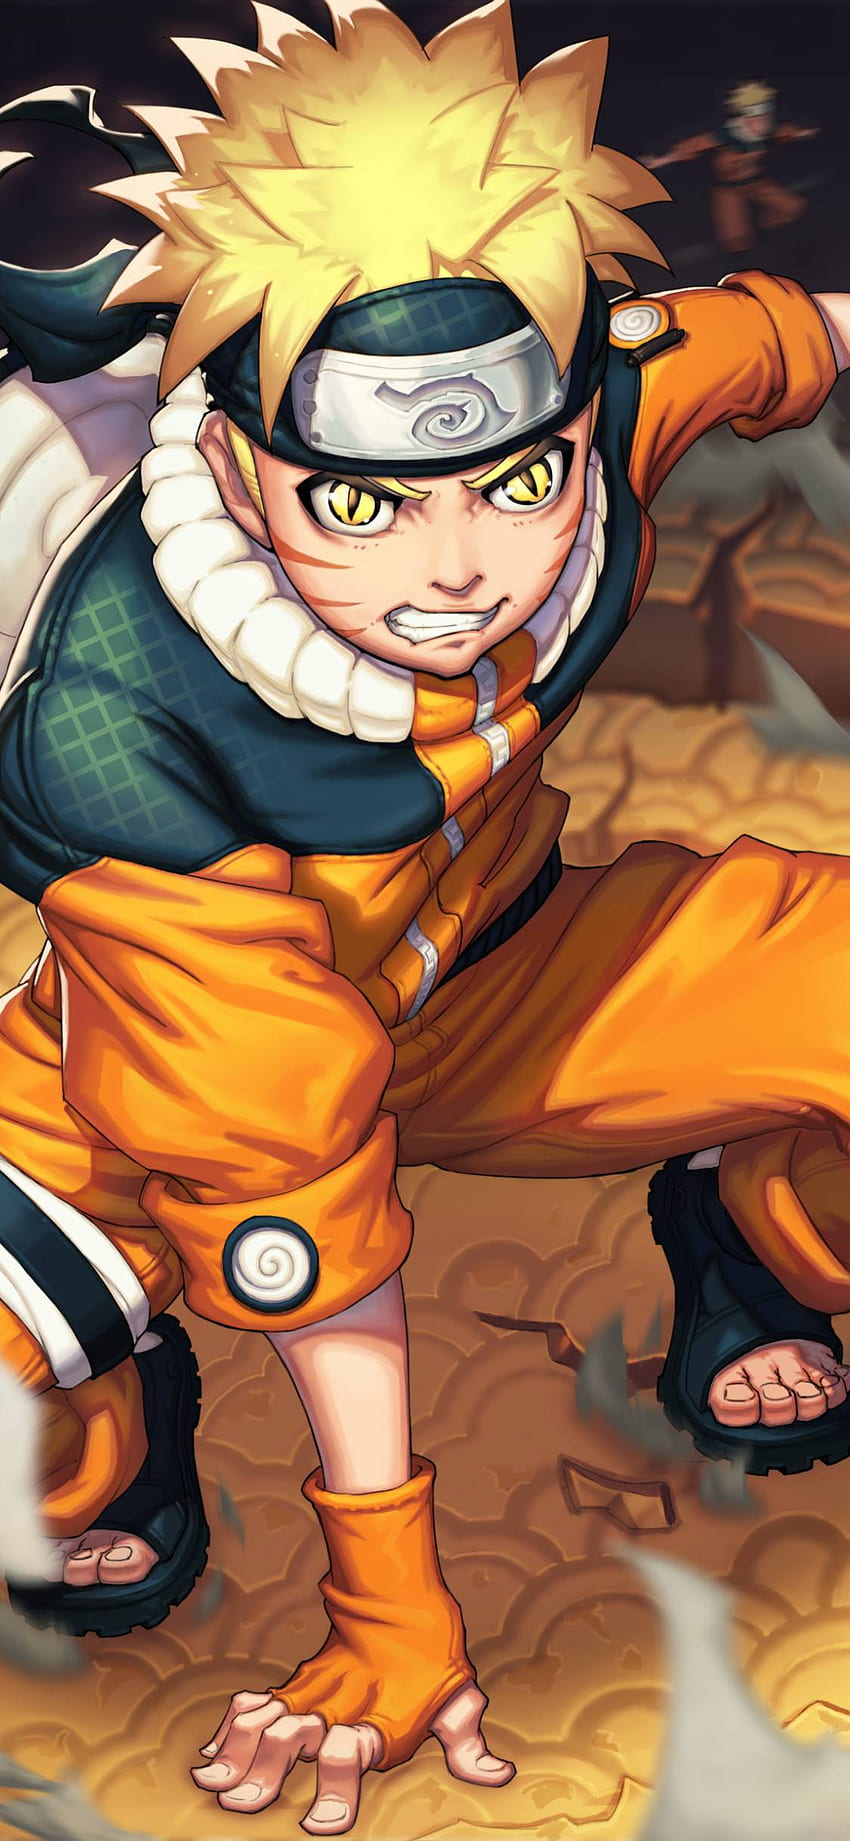 Naruto Uzumaki là một trong những nhân vật được yêu thích nhất trong bộ anime Naruto. Với những hình nền cho iPhone liên quan đến Naruto Uzumaki, bạn sẽ được thấy nhân vật yêu thích của mình trên màn hình điện thoại của mình. 